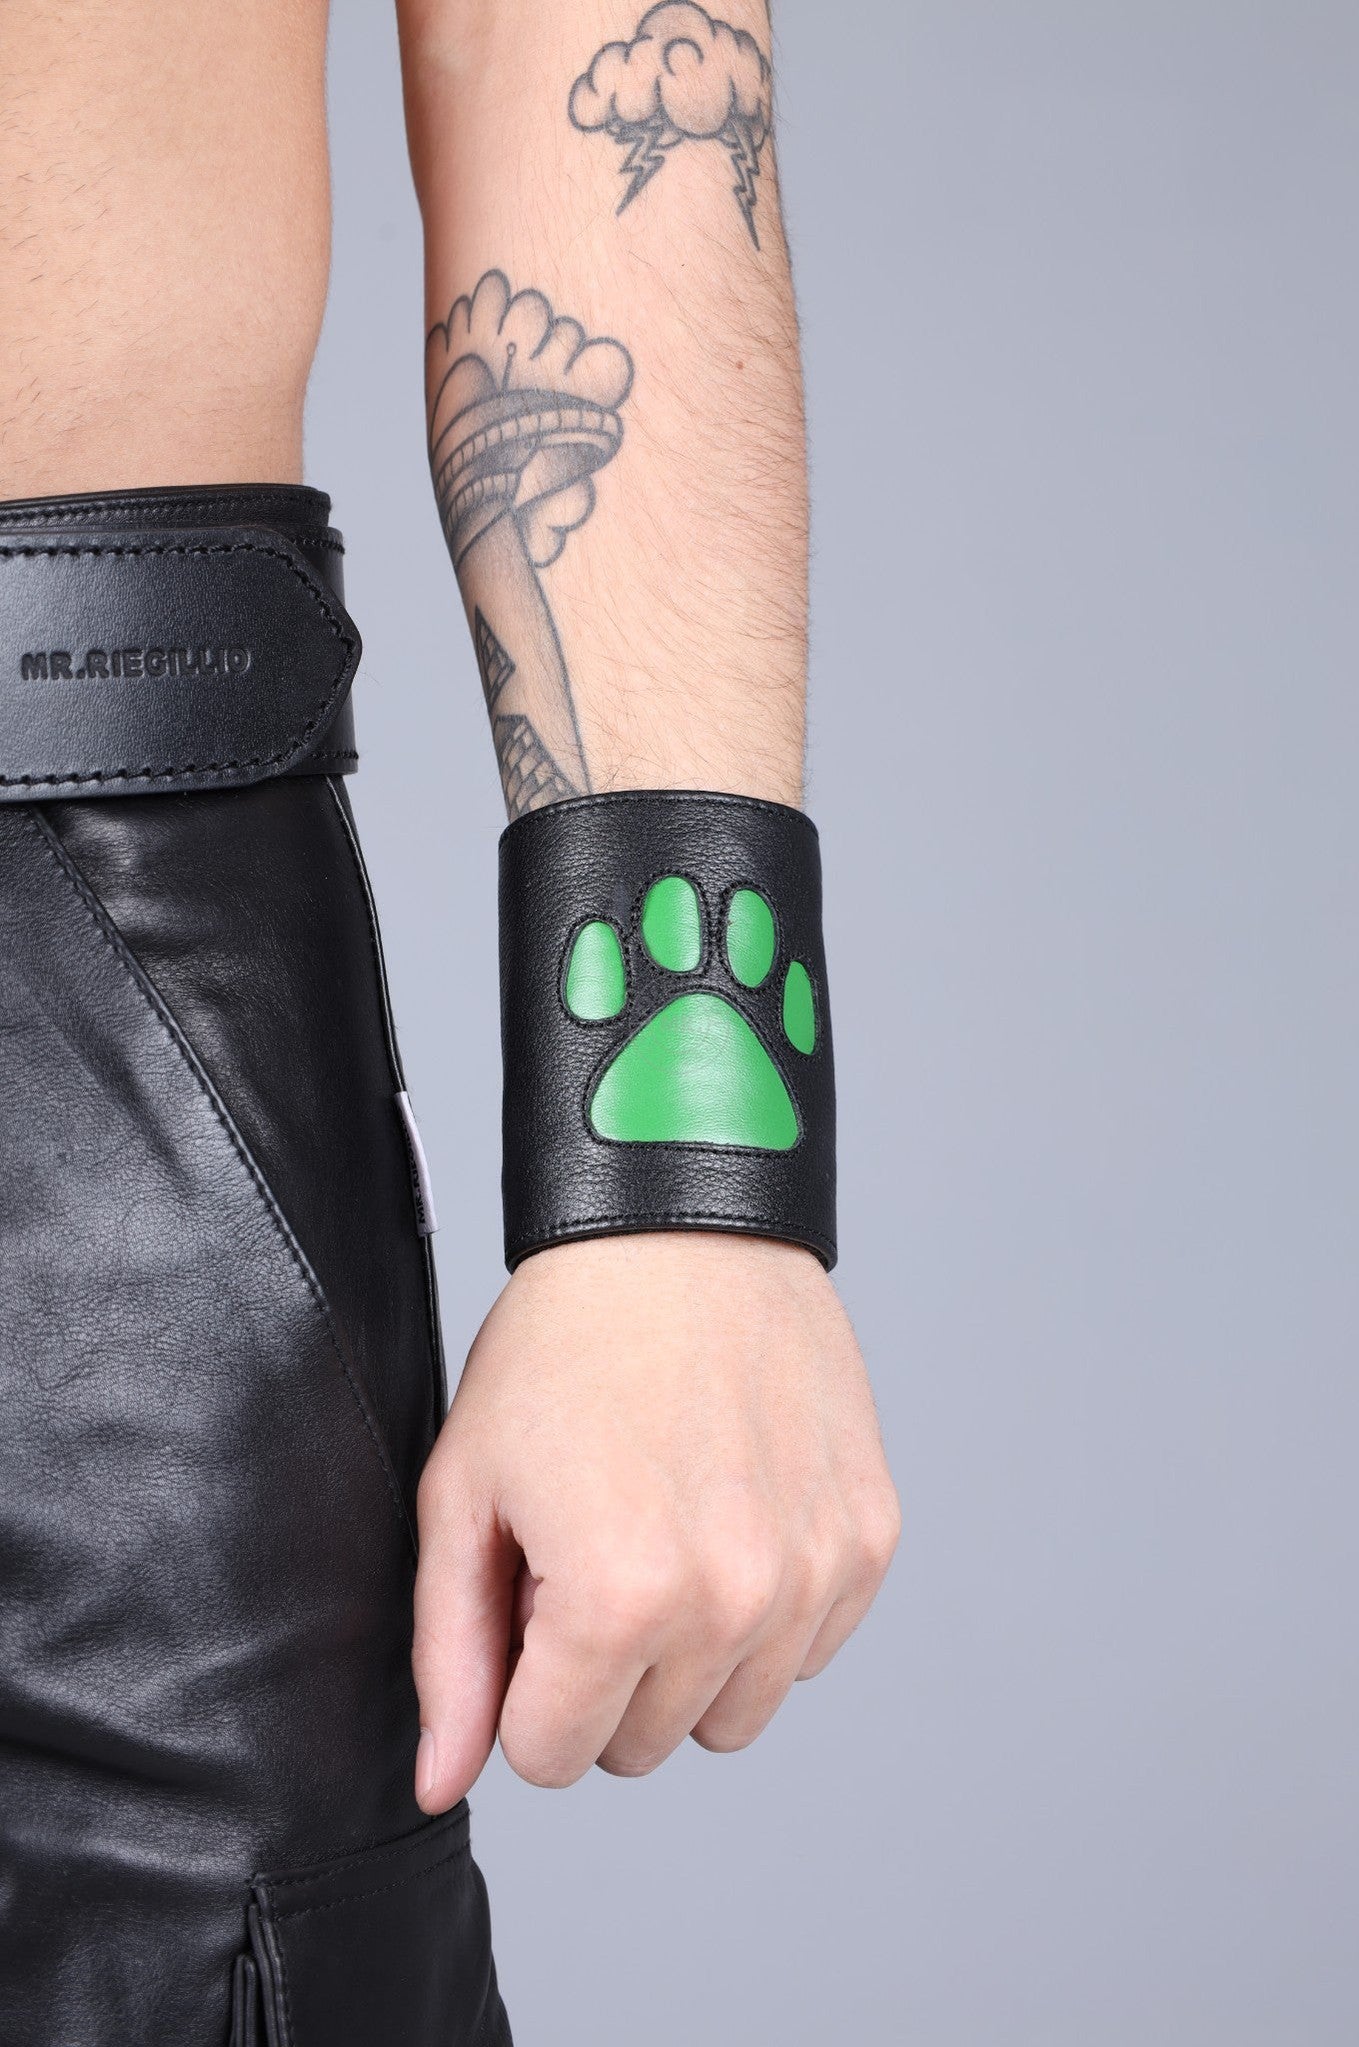 Black Leather Puppy Wrist Wallet - Parrot Green at MR. Riegillio